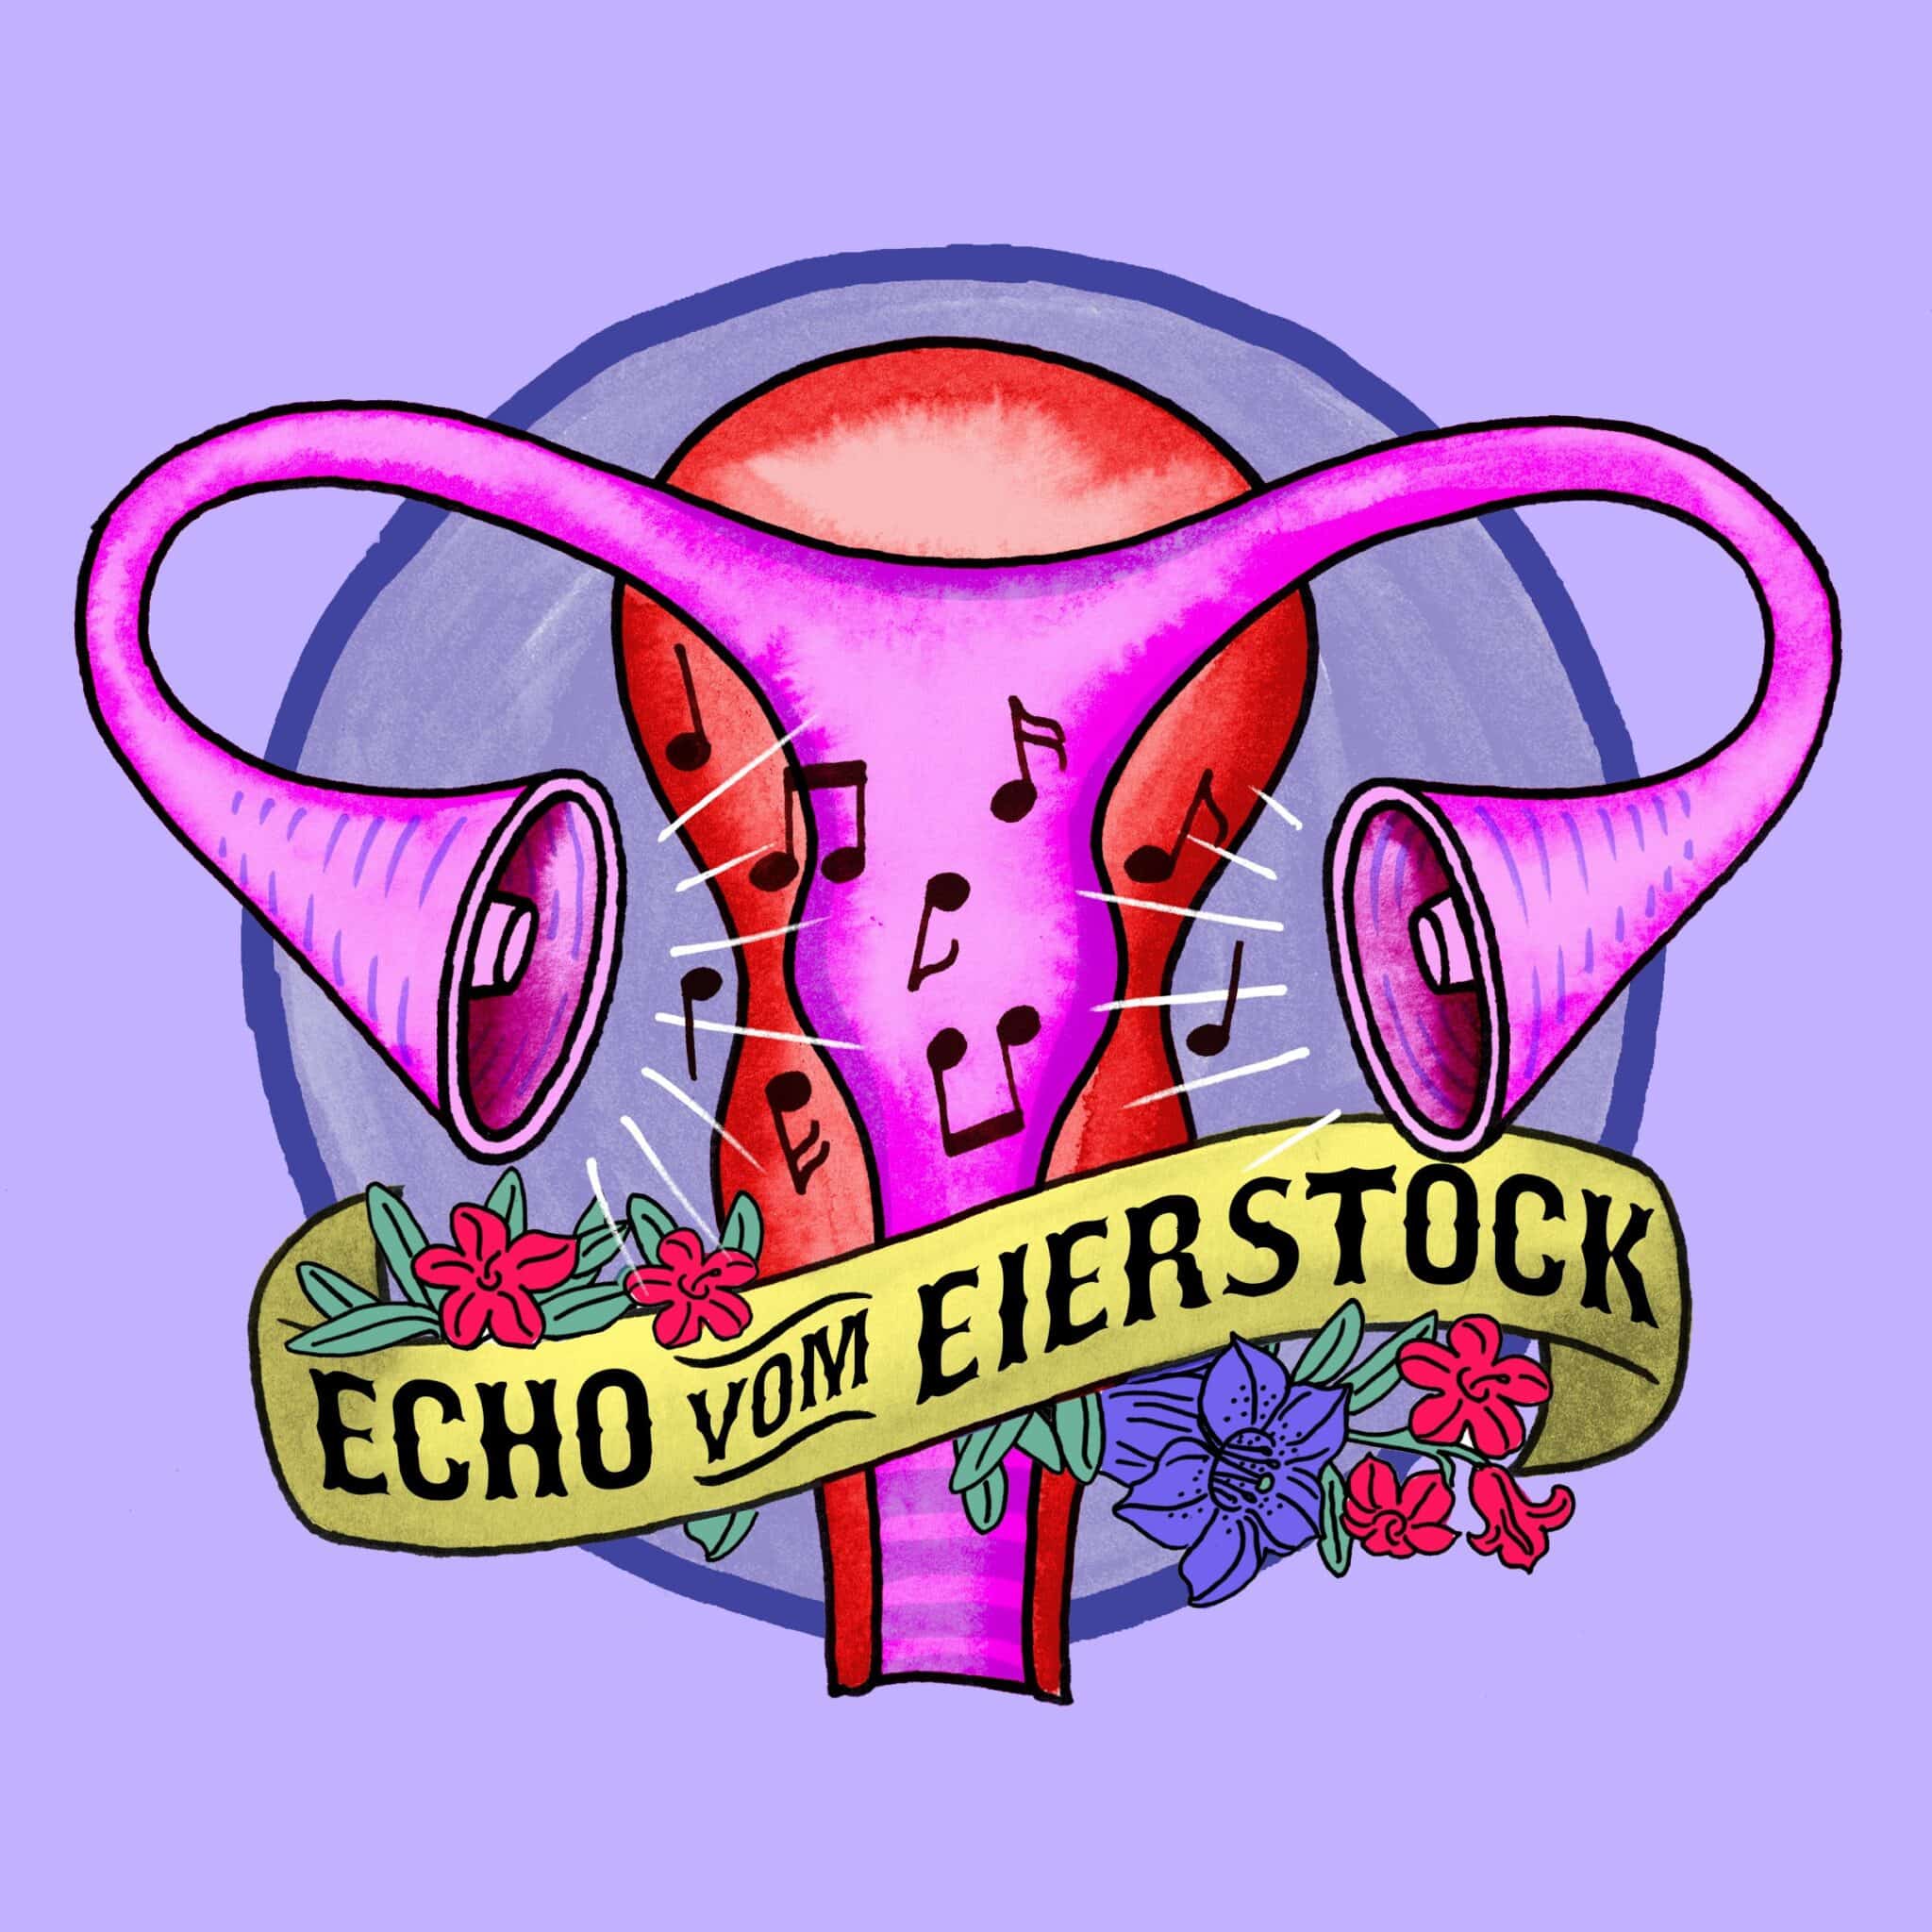 Immagine del profilo Echo vom Eierstock